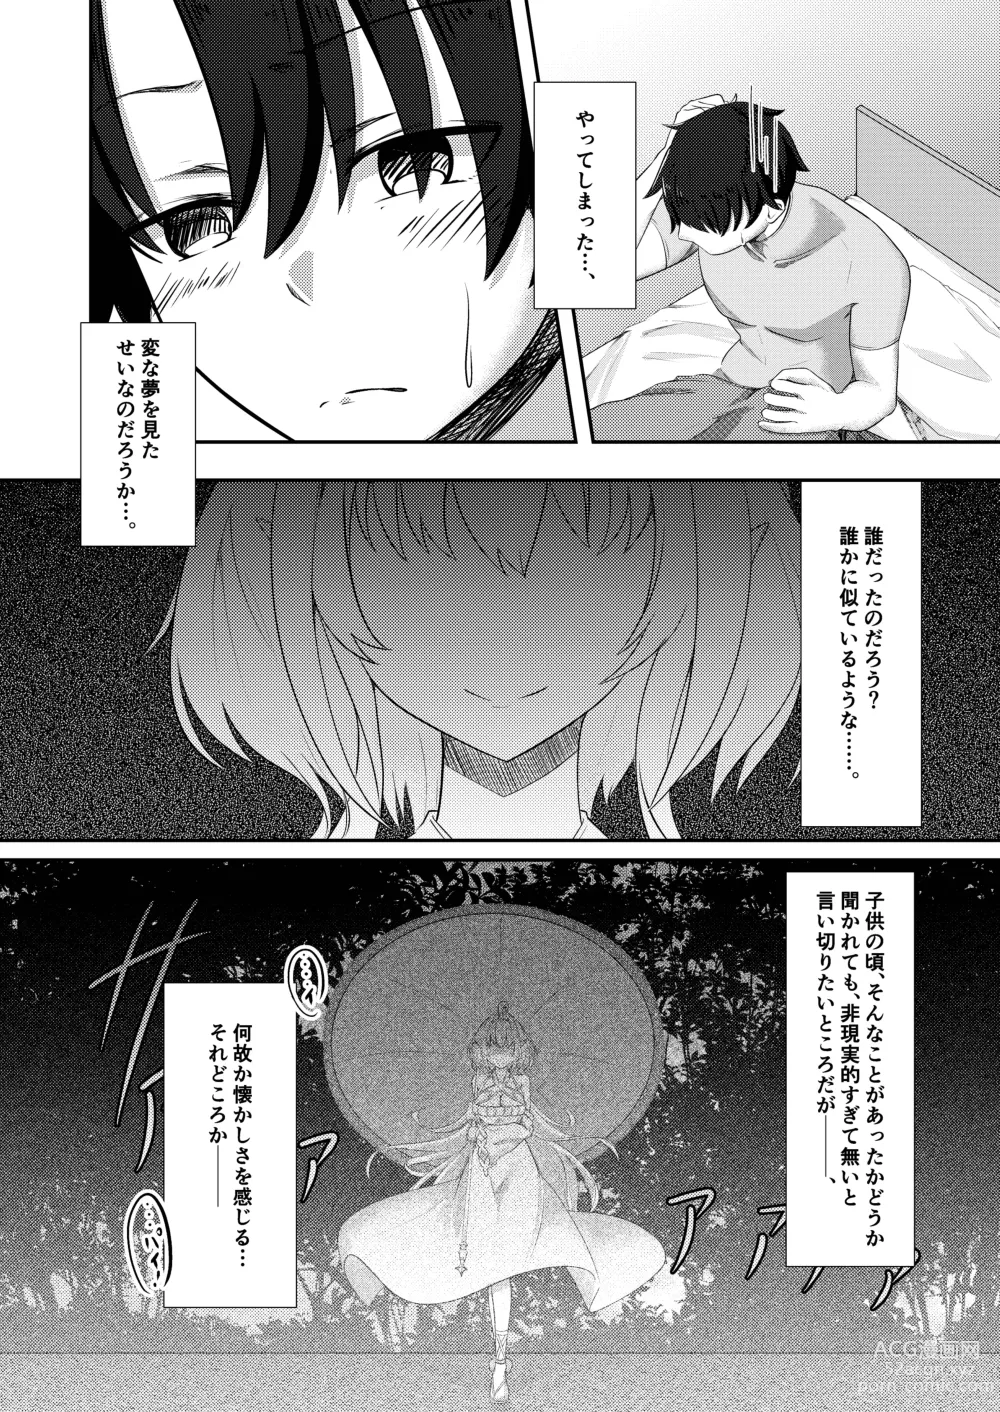 Page 18 of doujinshi Ima wa Touki Manatsu no Yume